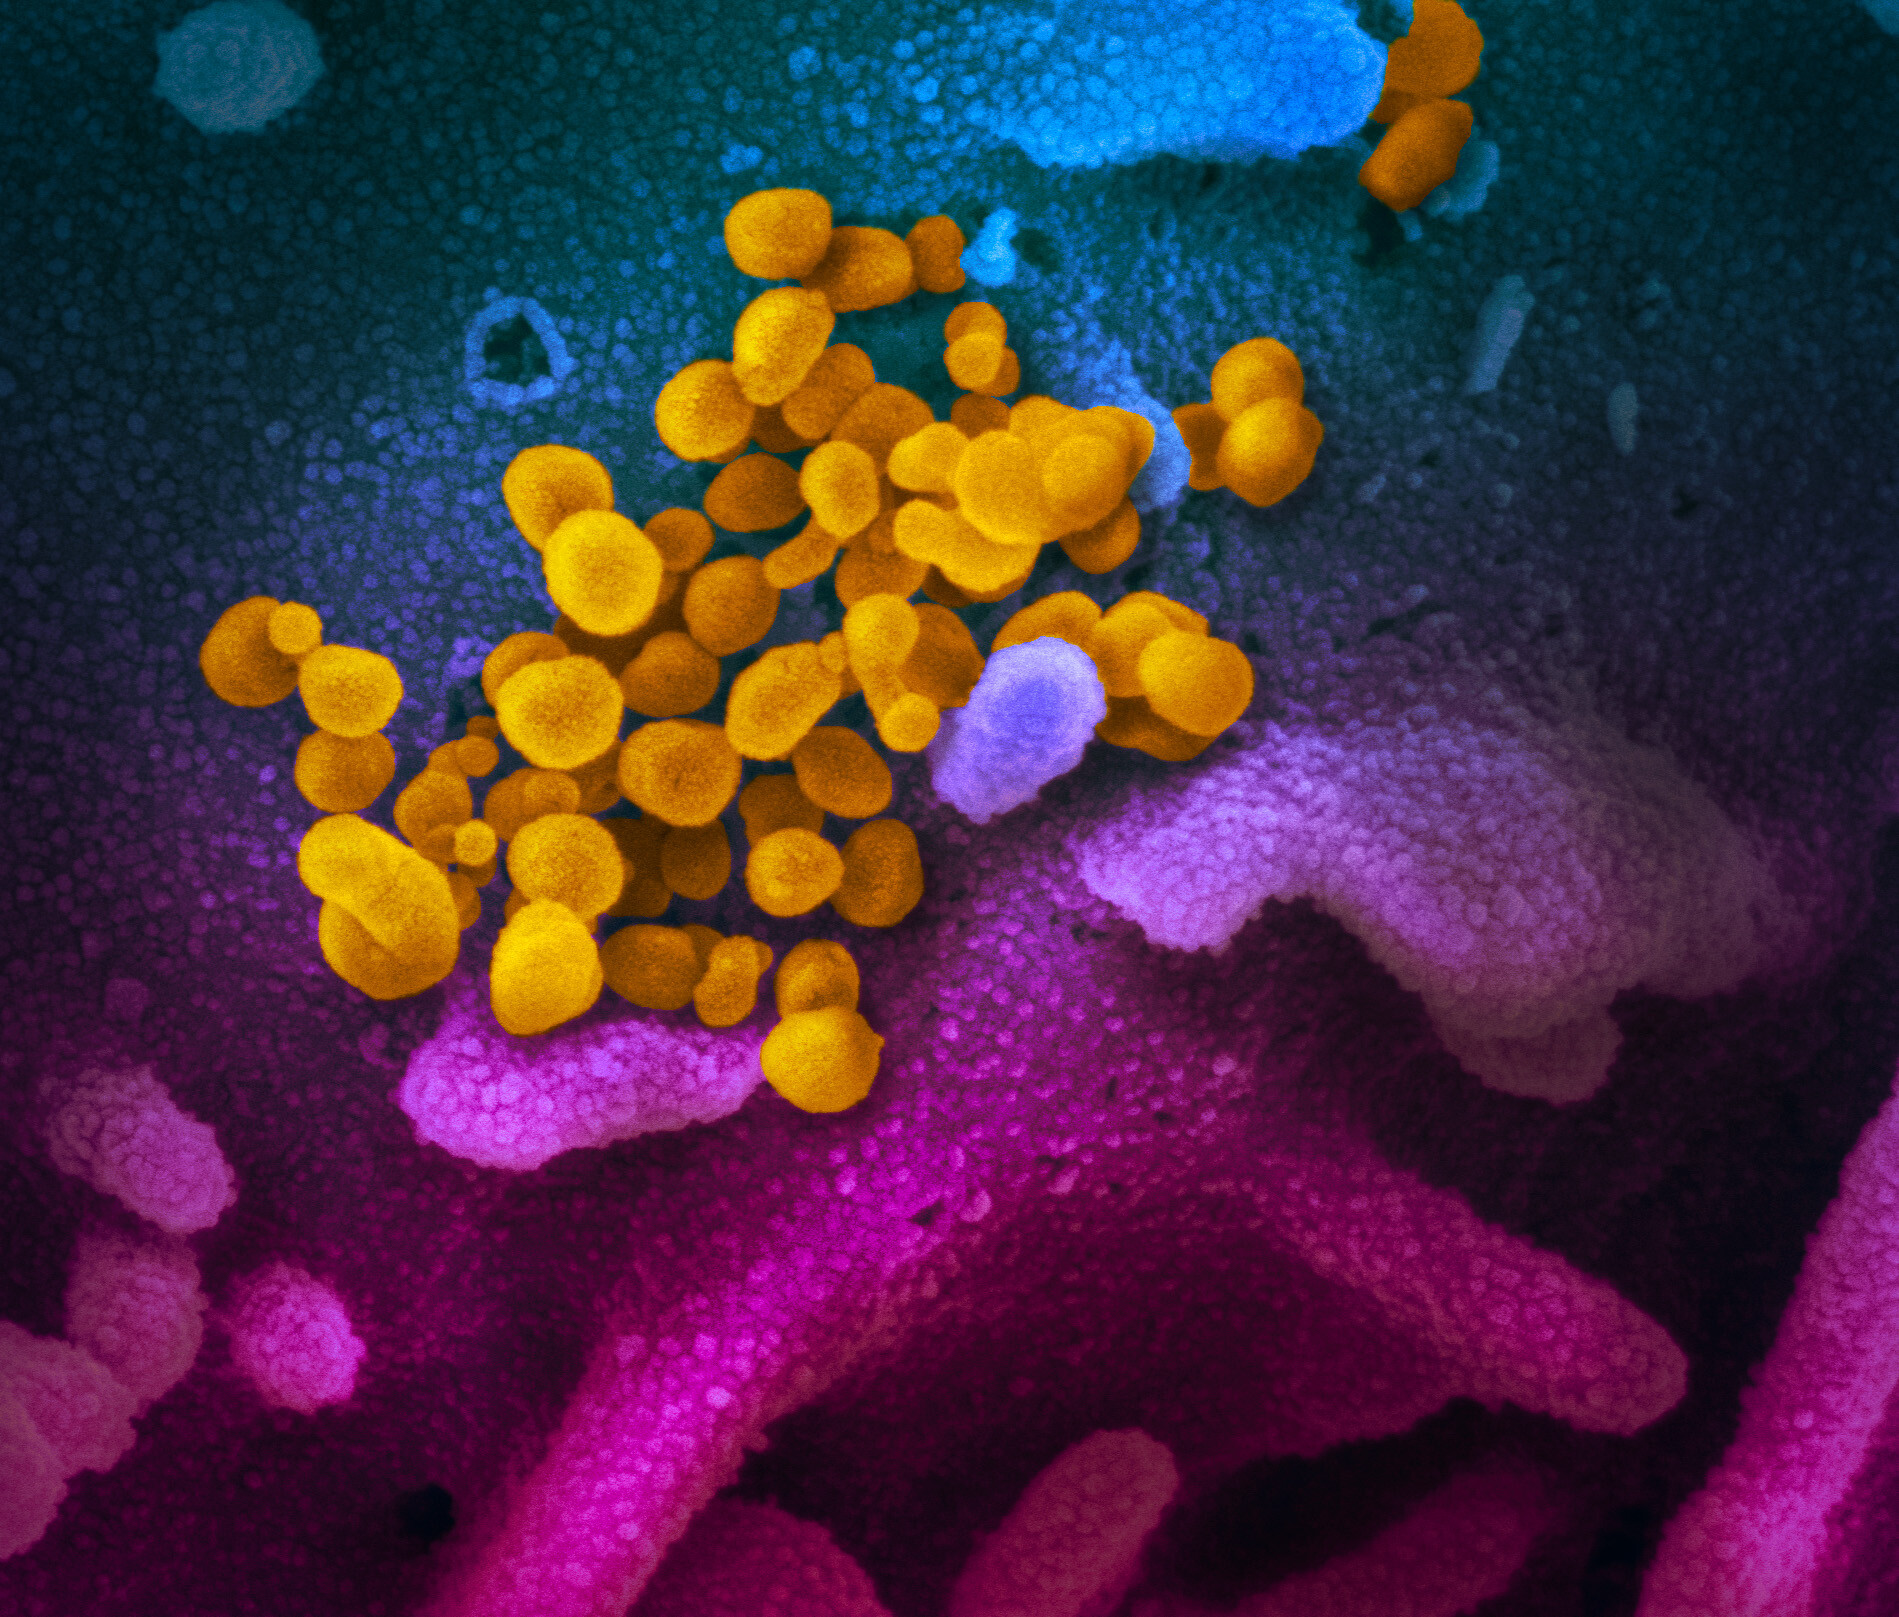 Désinfection du COVID-19 en Haute-Savoie : Nouveau coronavirus SARS-Cov-2 observé au microscope électronique à balayage -- CC 2.0 NIAID